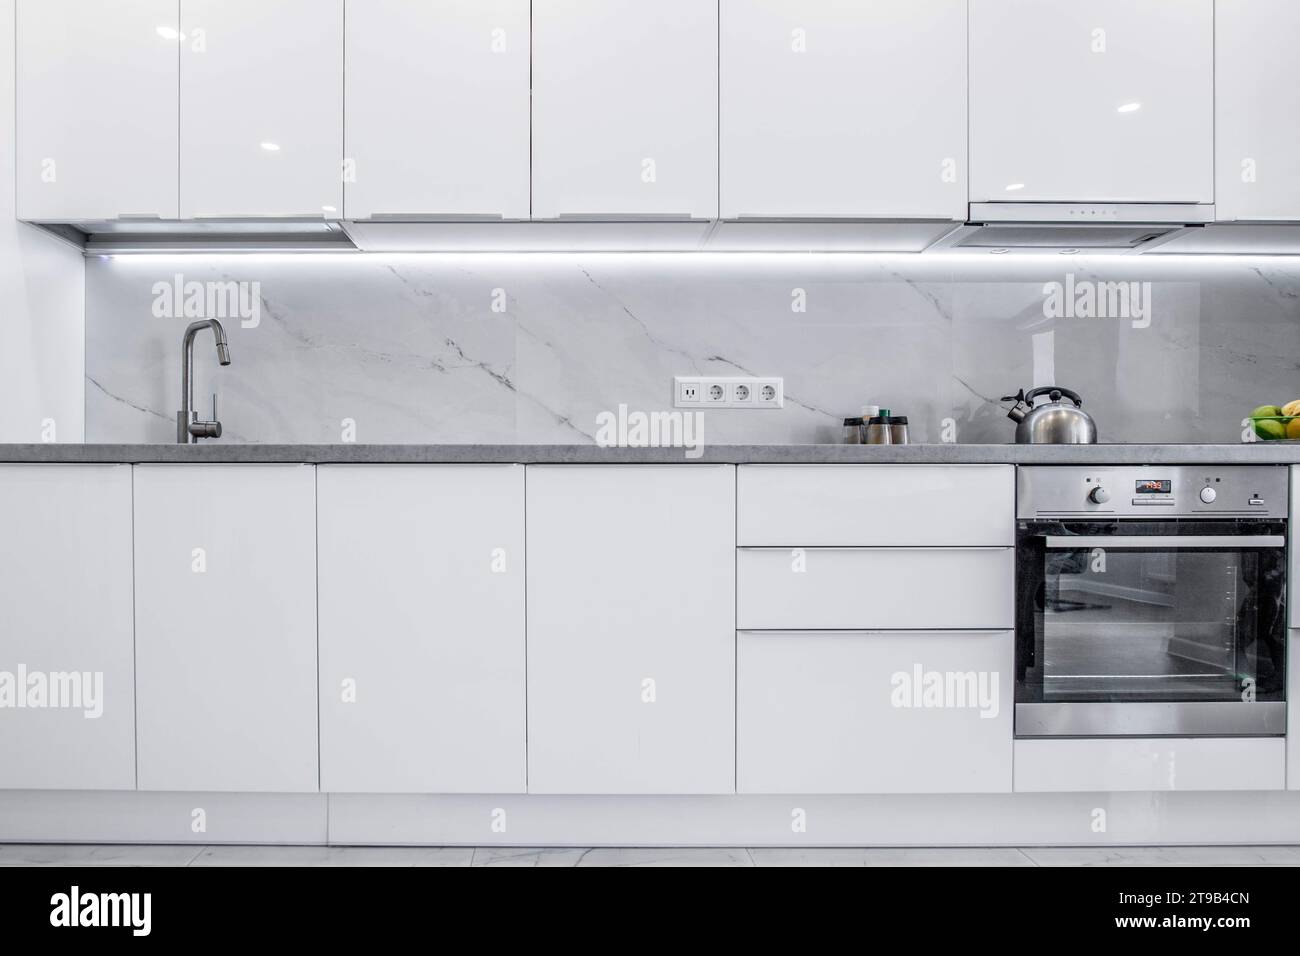 Eine saubere, helle Küche mit reinweißen Schränken und modernem Design. Das Ambiente der Küche ist einfach, erfrischend und einladend Stockfoto